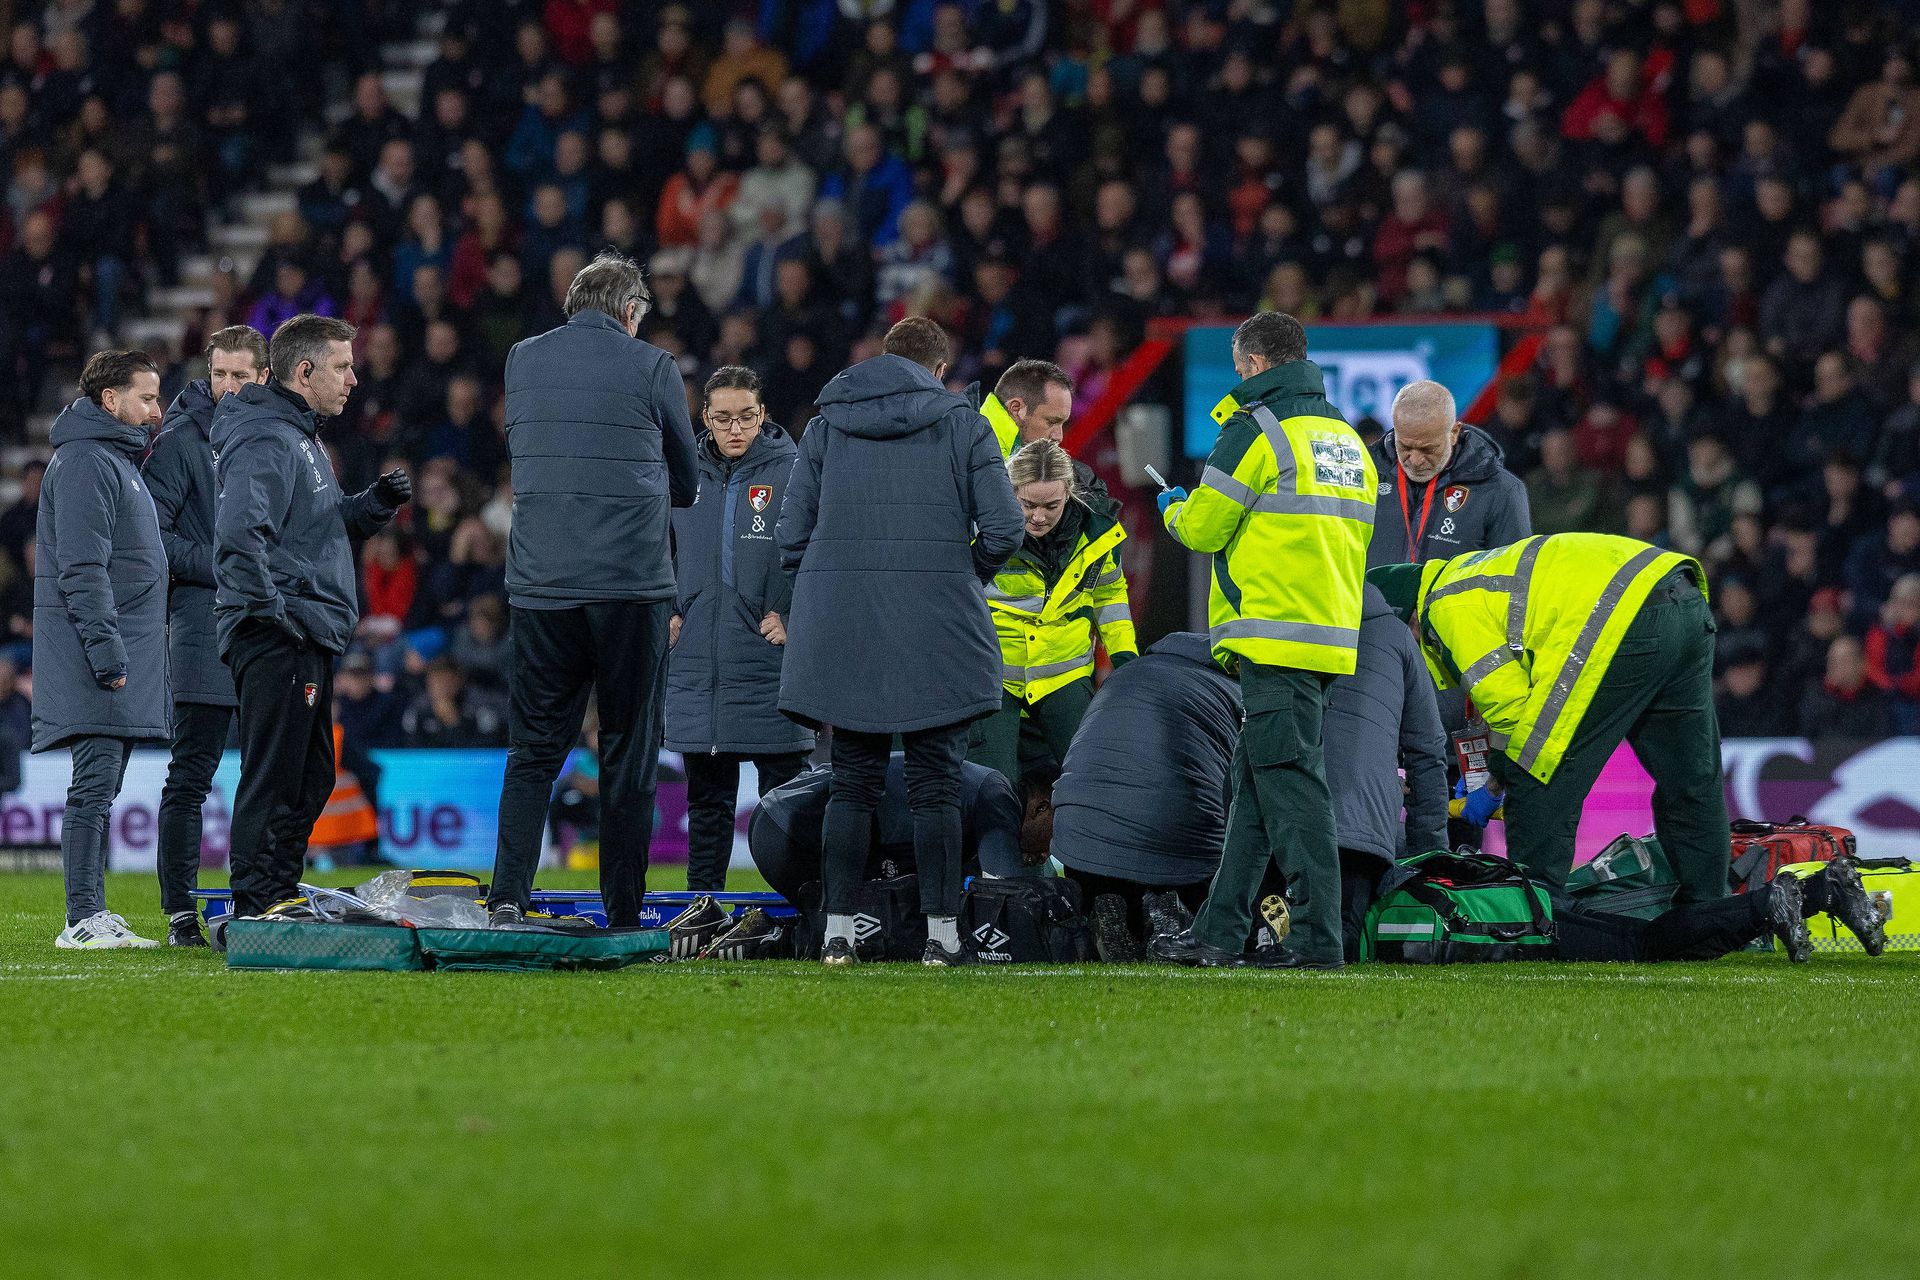 Tragédia na Premier League: Capitão do Luton Town desmaia durante